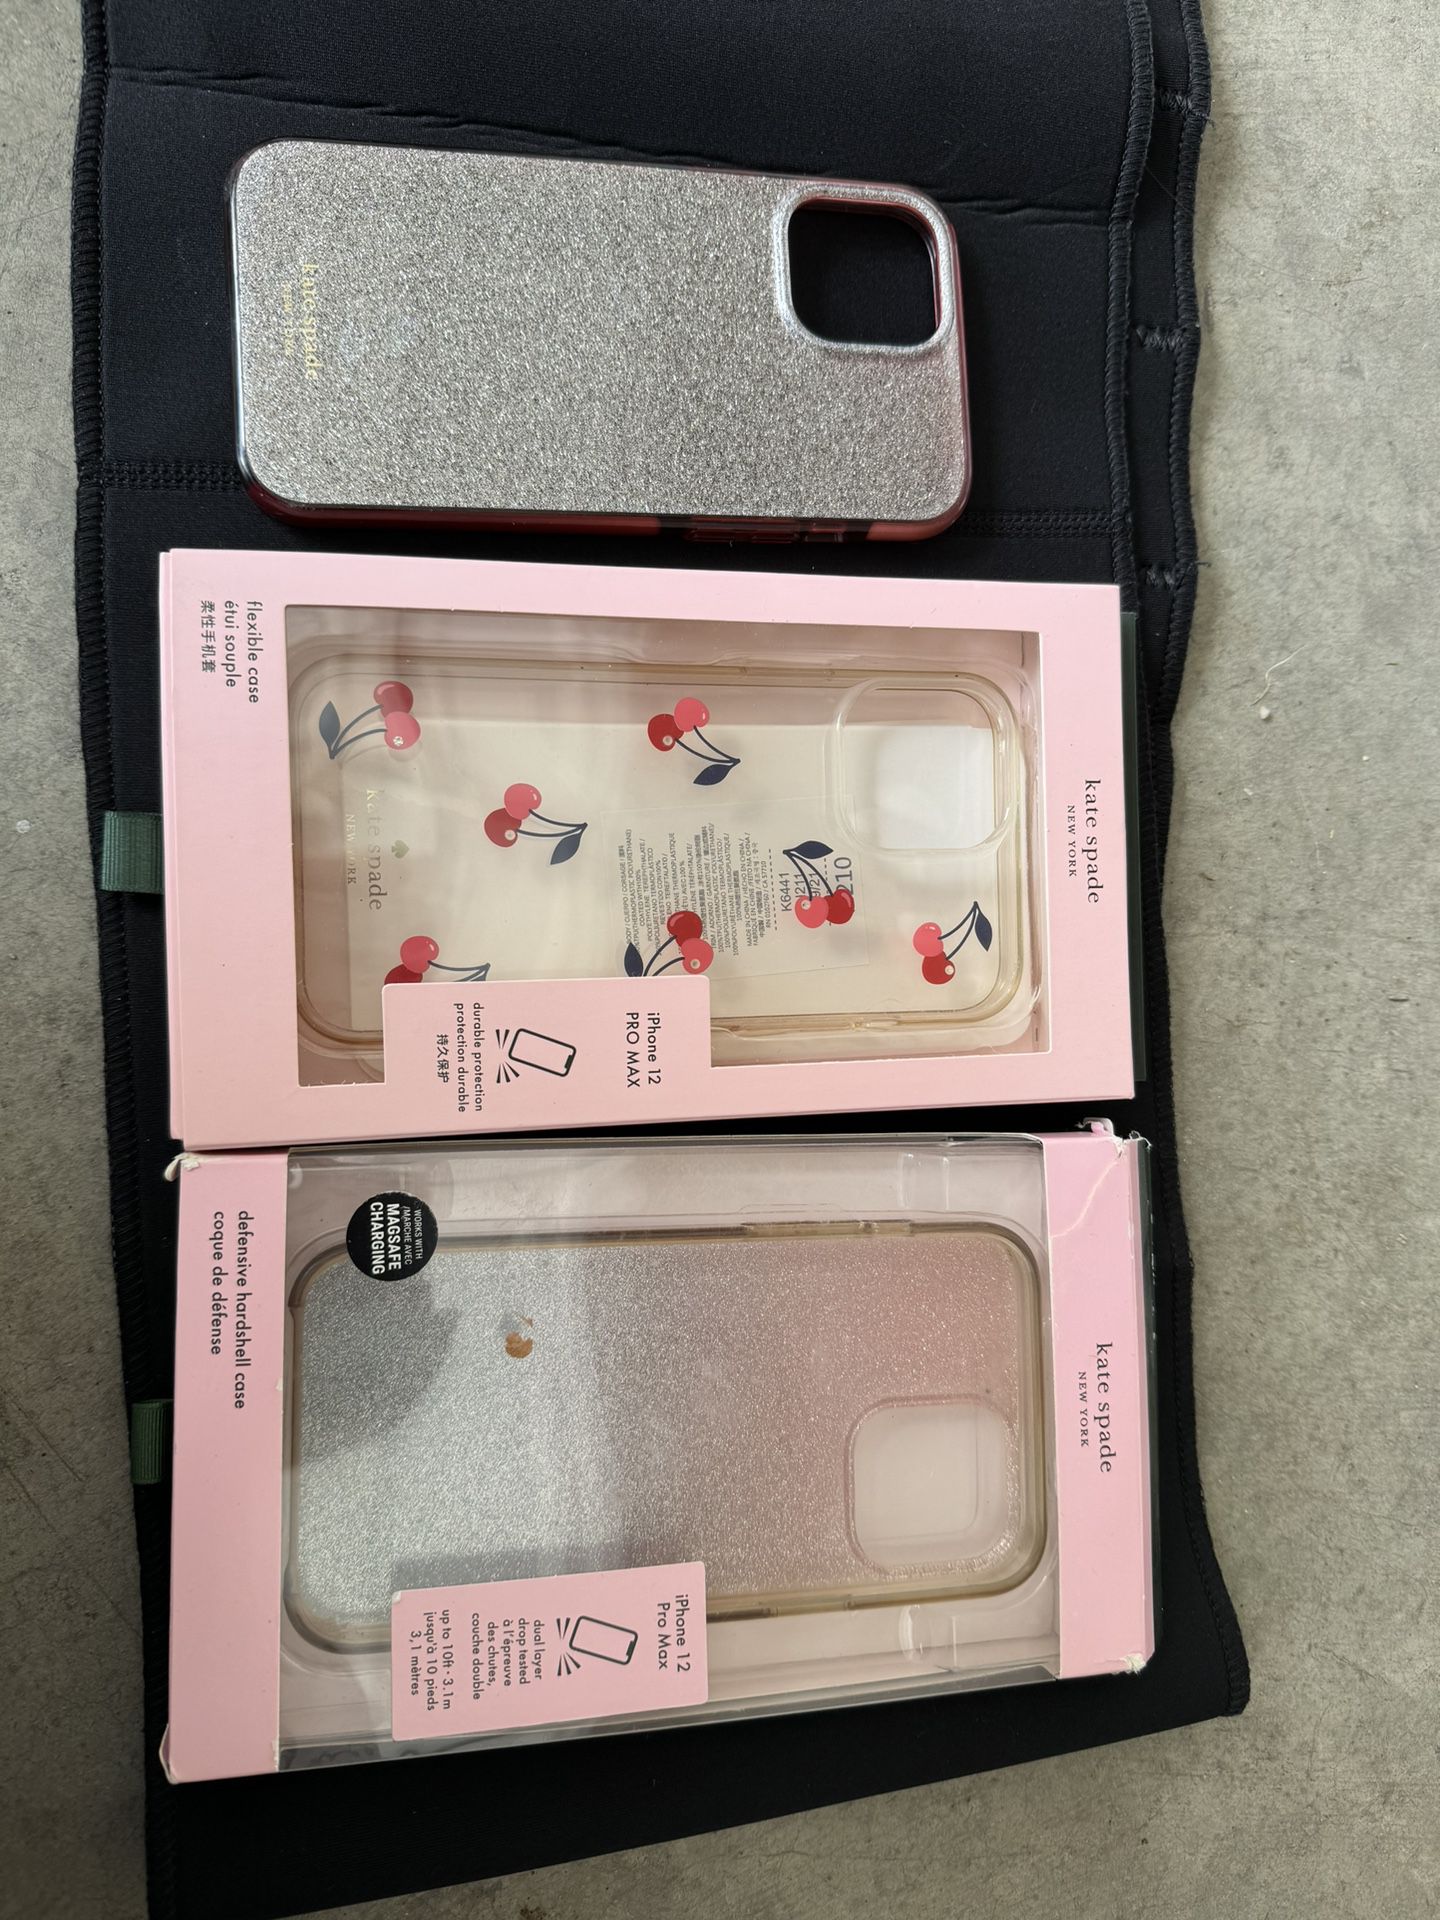 Iphone Cases 